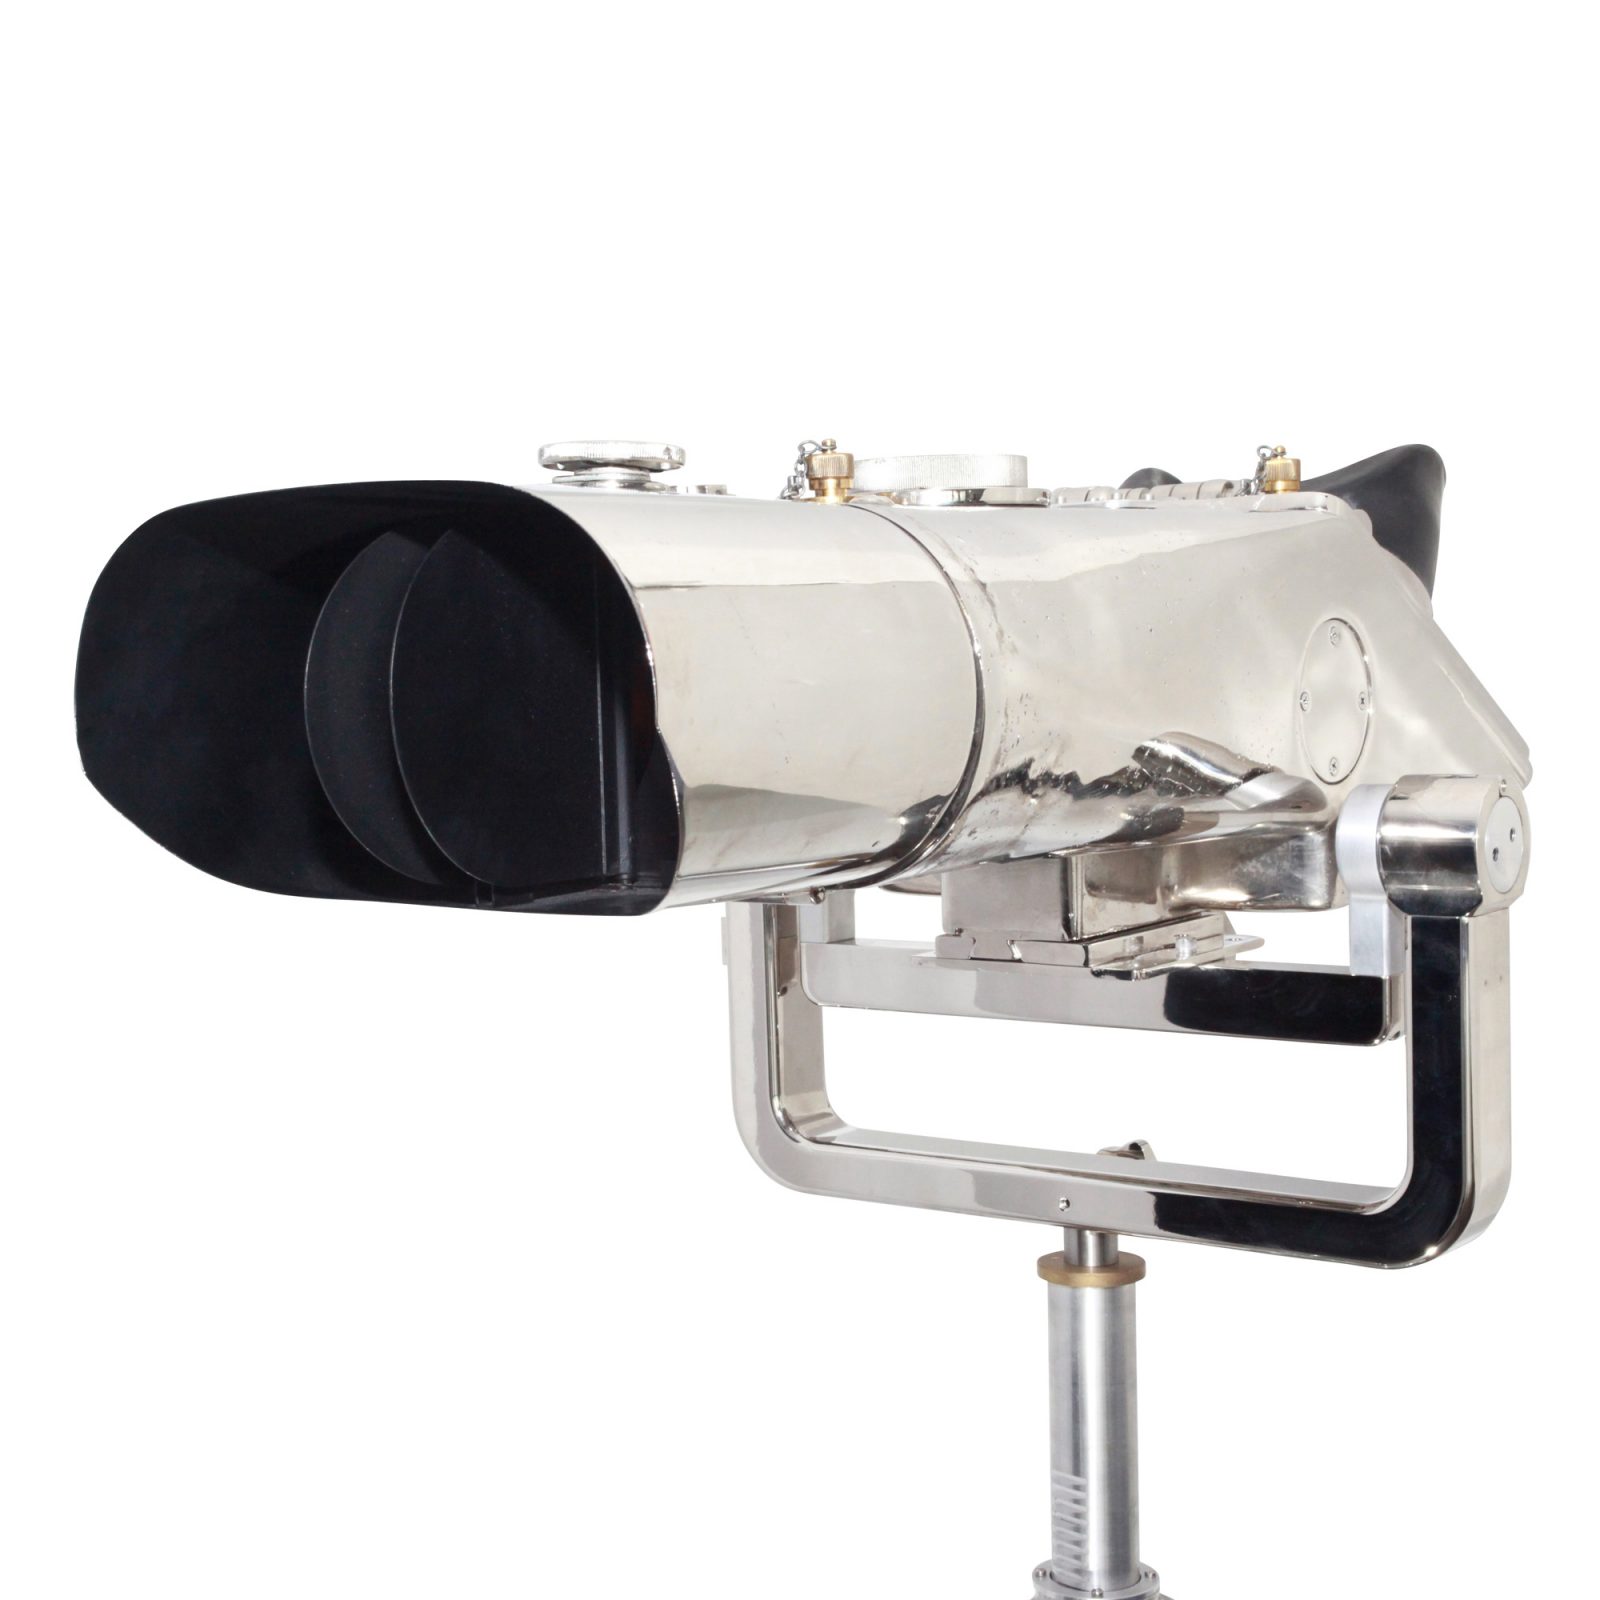 Russian 20x110 Binocular SN1120165